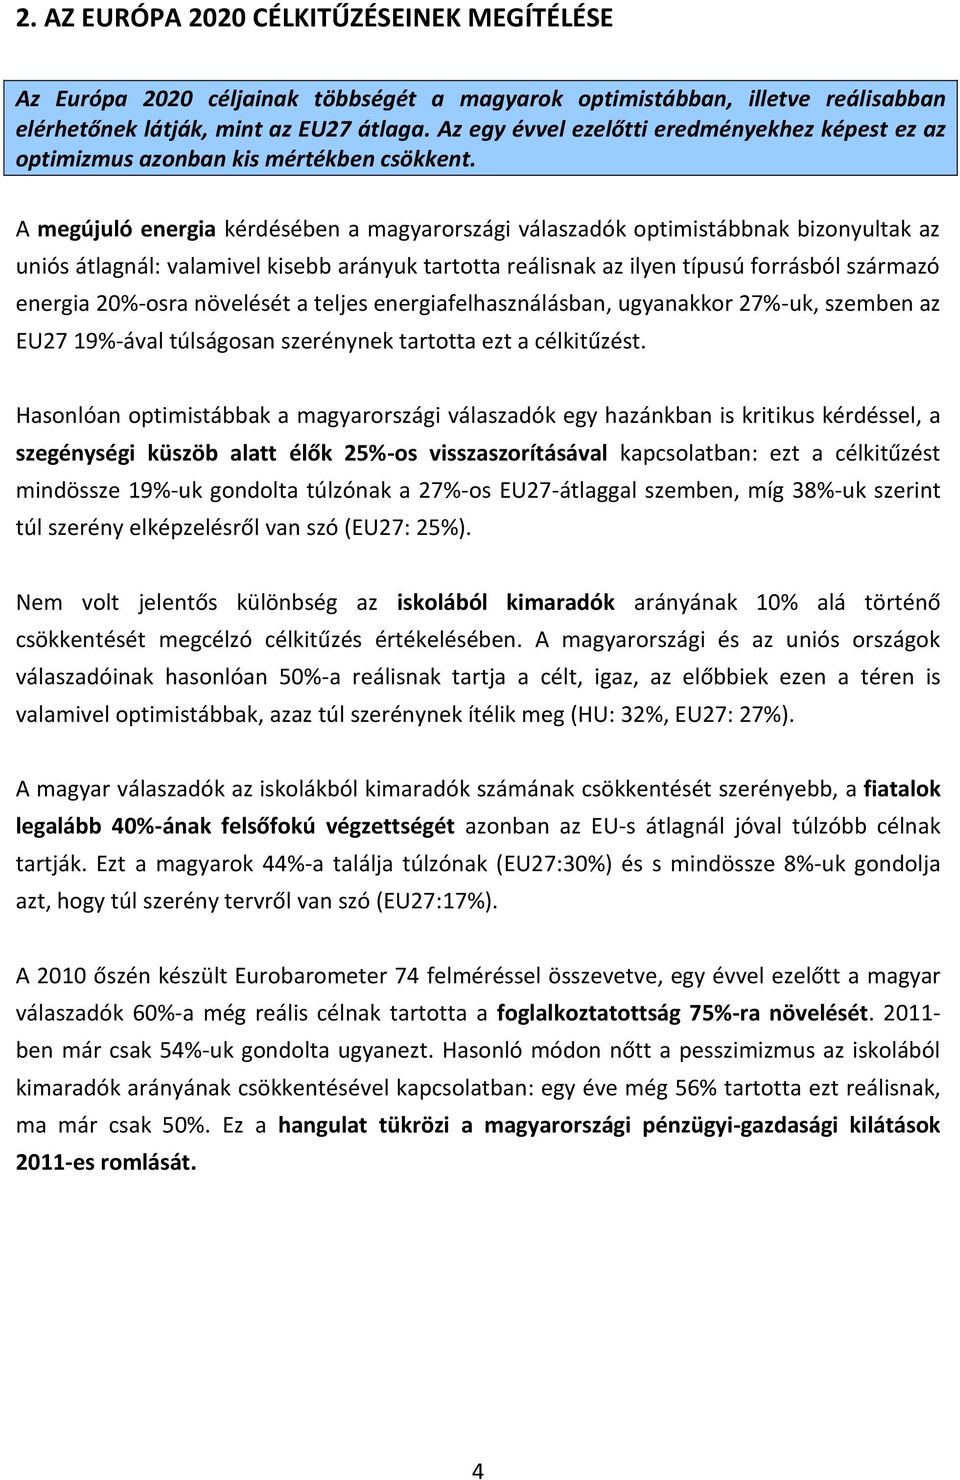 A megújuló energia kérdésében a magyarországi válaszadók optimistábbnak bizonyultak az uniós átlagnál: valamivel kisebb arányuk tartotta reálisnak az ilyen típusú forrásból származó energia 20%-osra